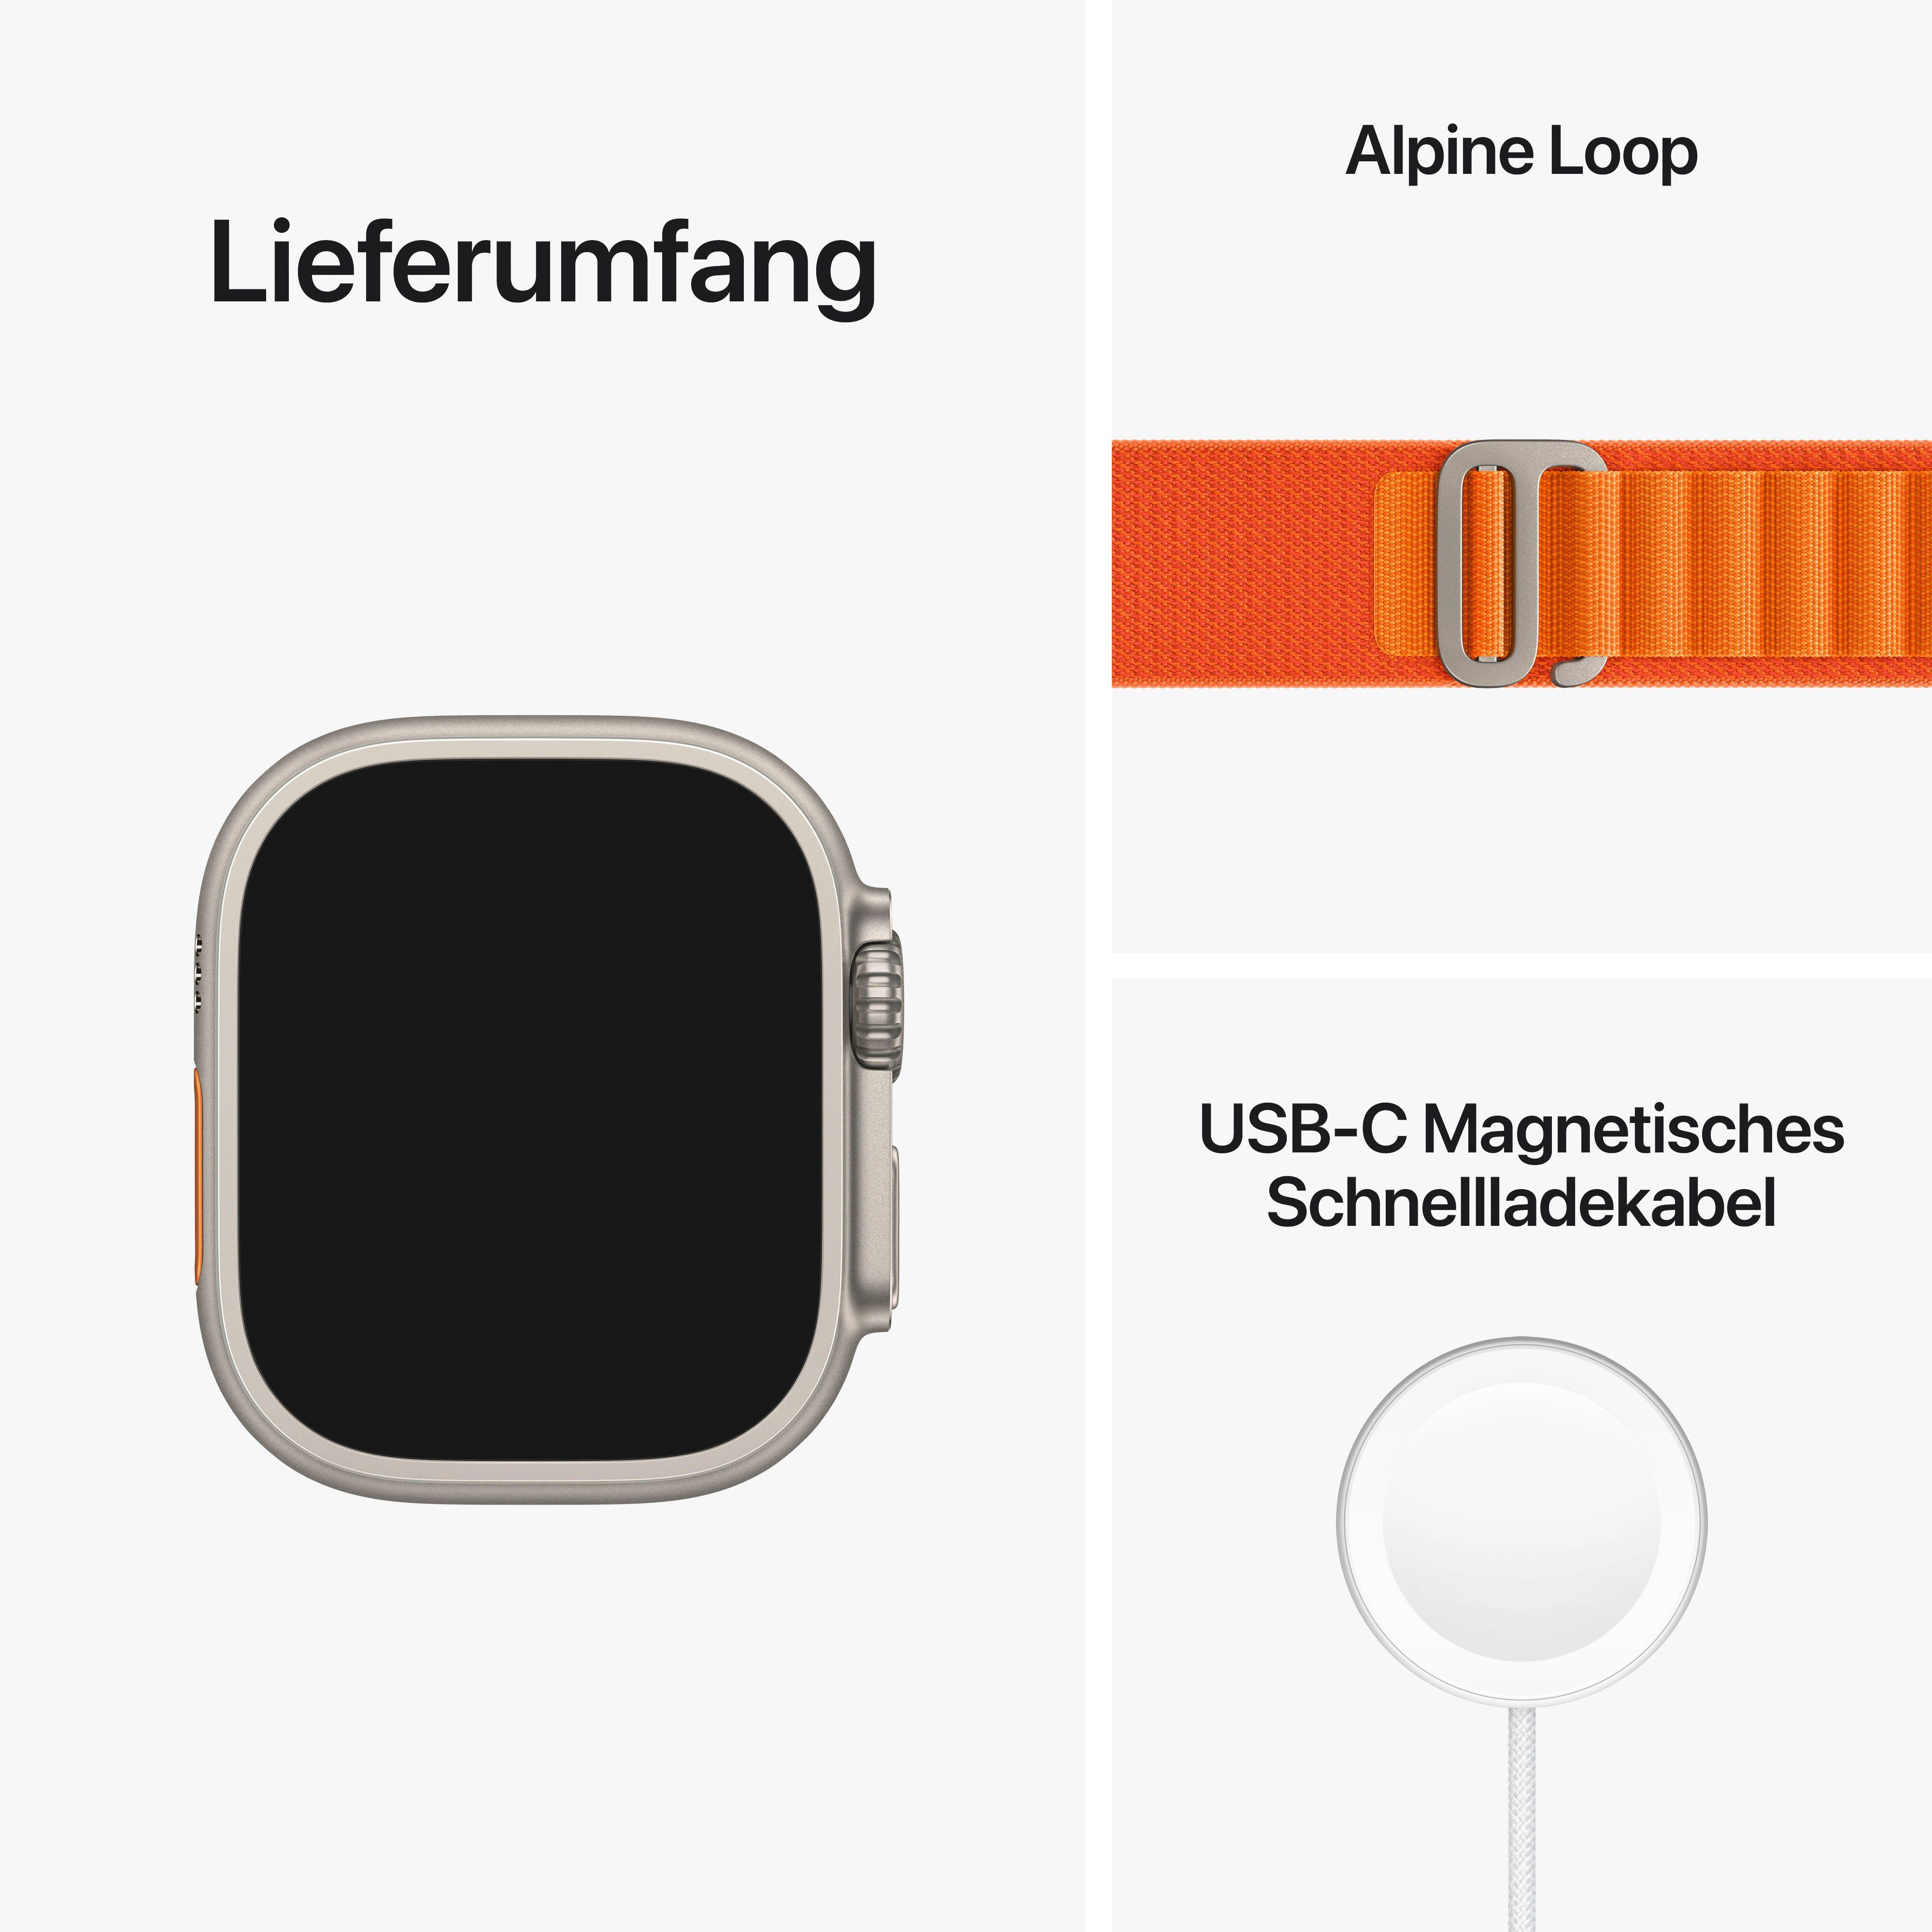 Apple Watch Ultra GPS 49mm Gemacht + Orange Alpine S Cellular Alpine S extreme Anforderungen Watch, für